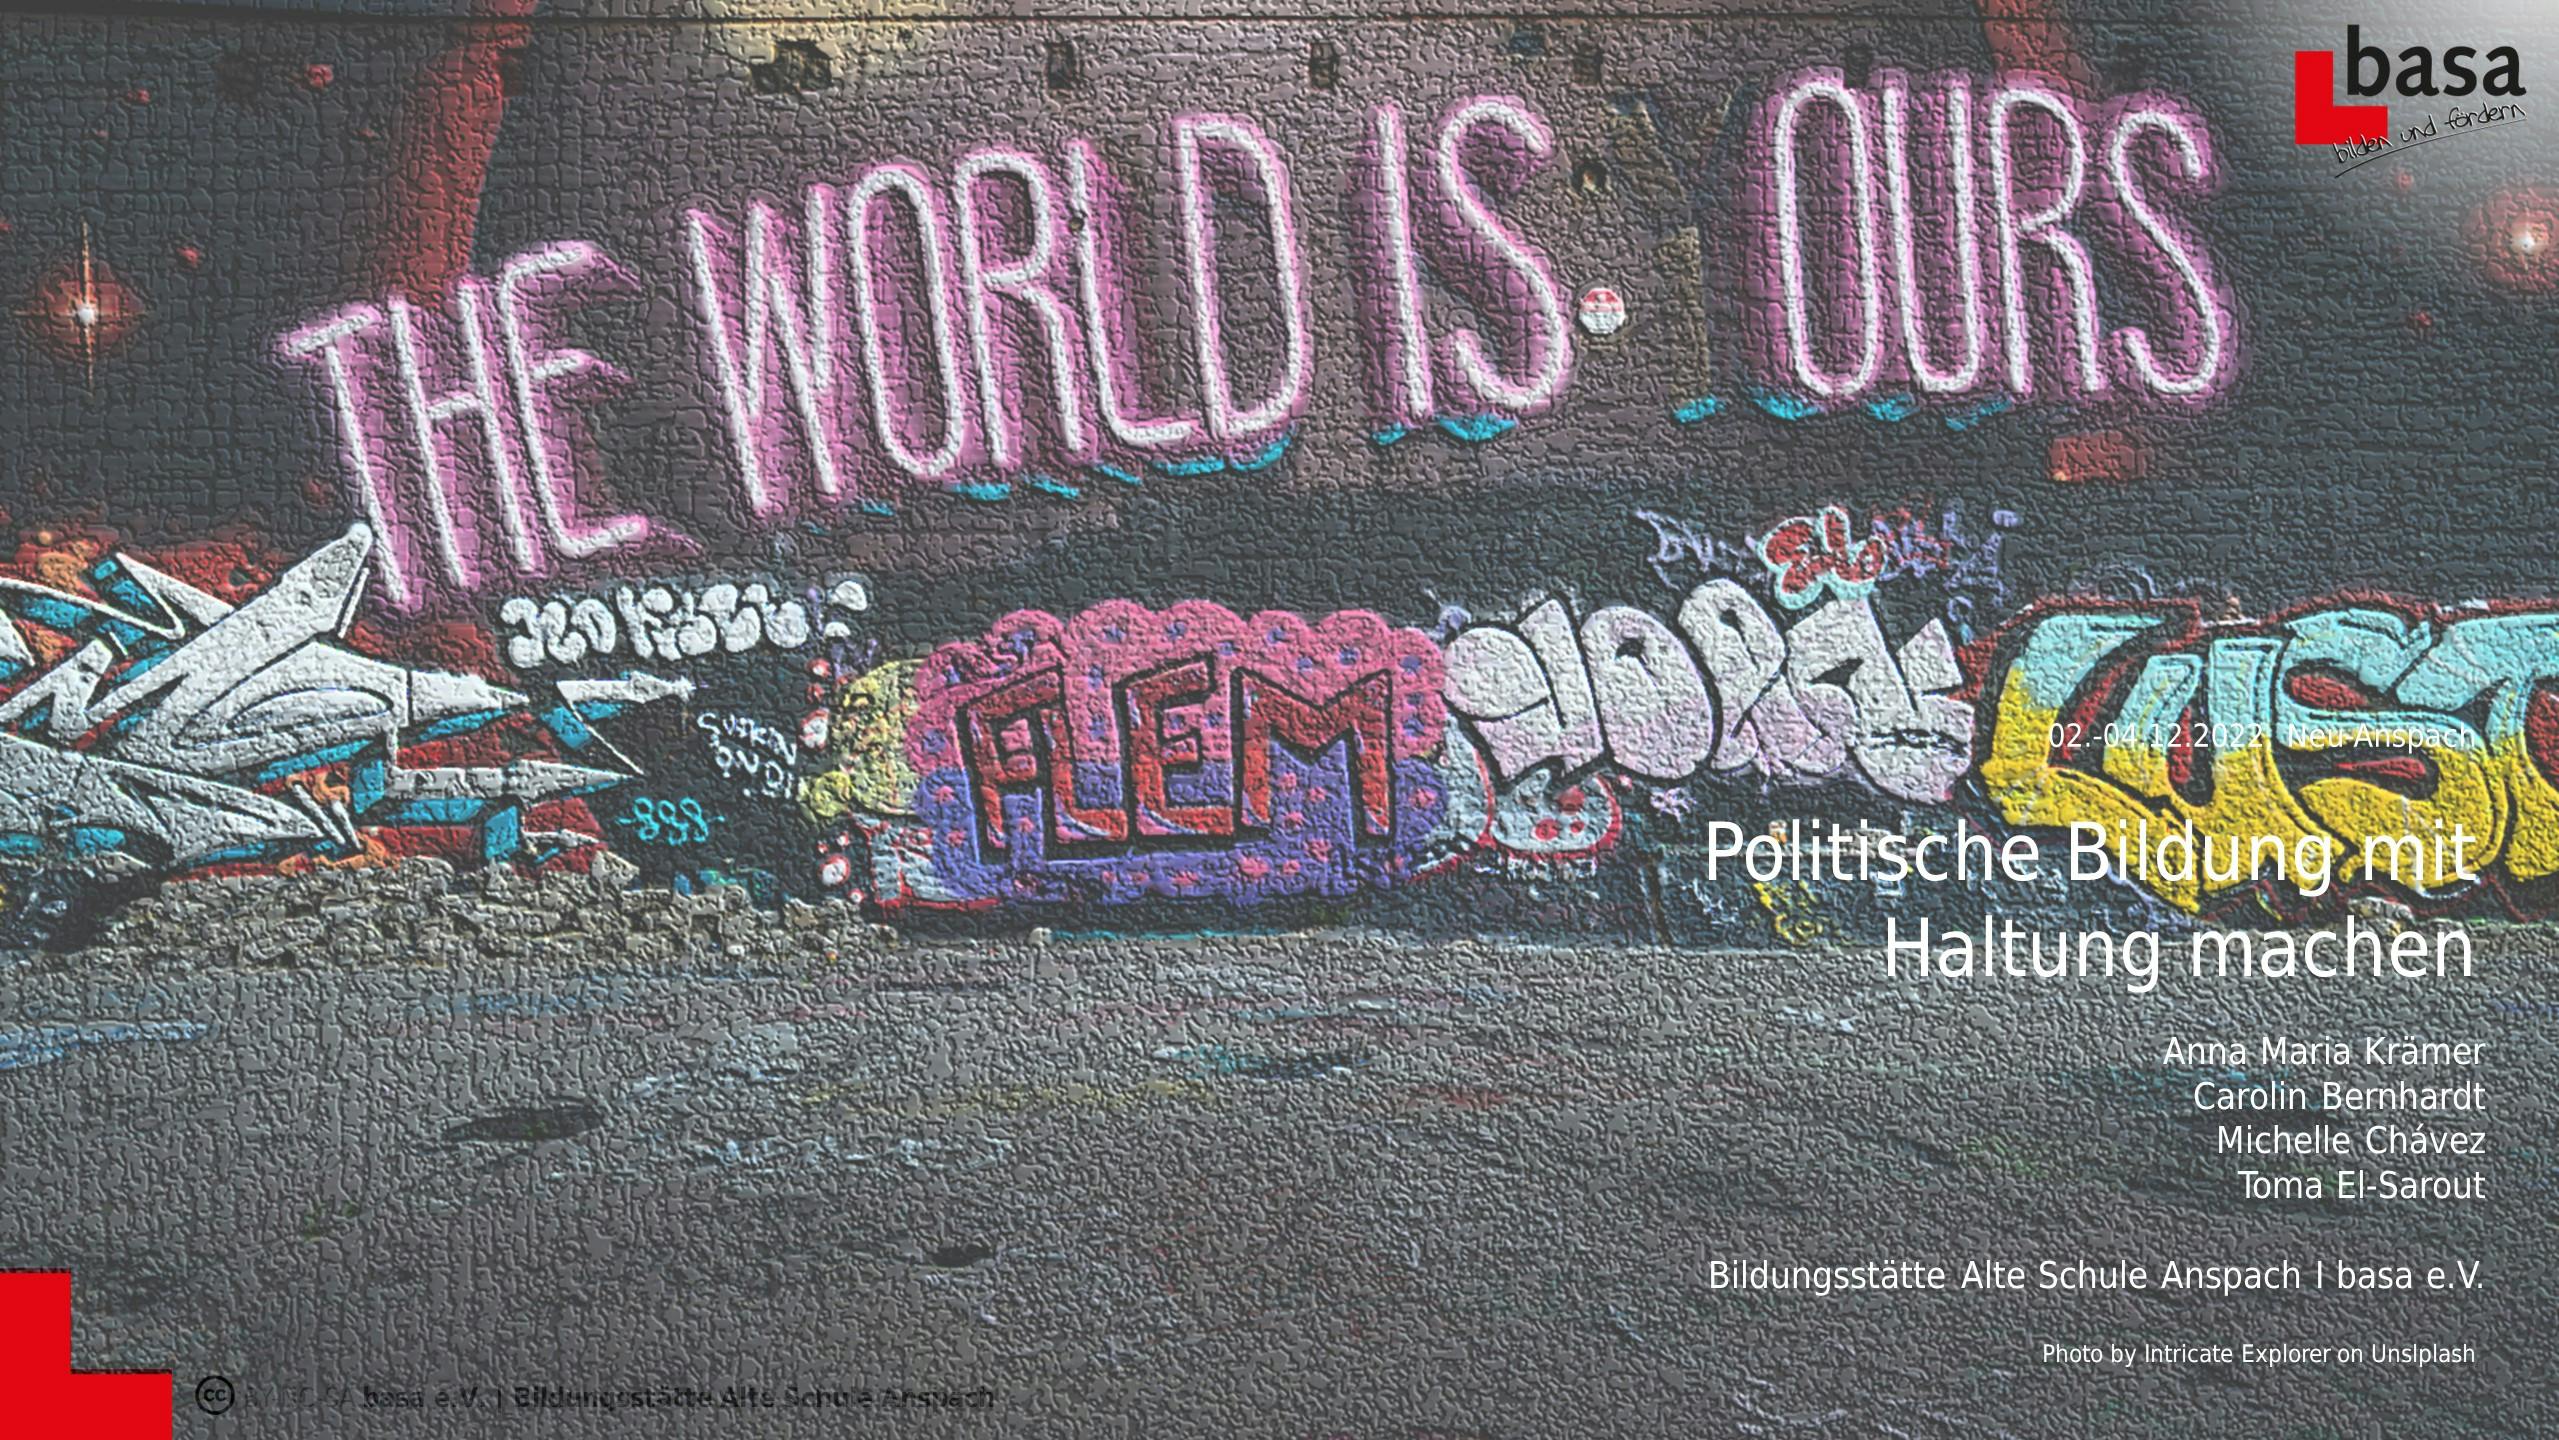 Auf dem Bild ist ein Graffiti mit dem Schriftzug The World is Yours. Die Schrift ist so wie ein Neonlicht und der erste Buchstabe von Yours leuchtet nicht, so dass es ein Wortspiel ist und auch heißt The World is Ours.